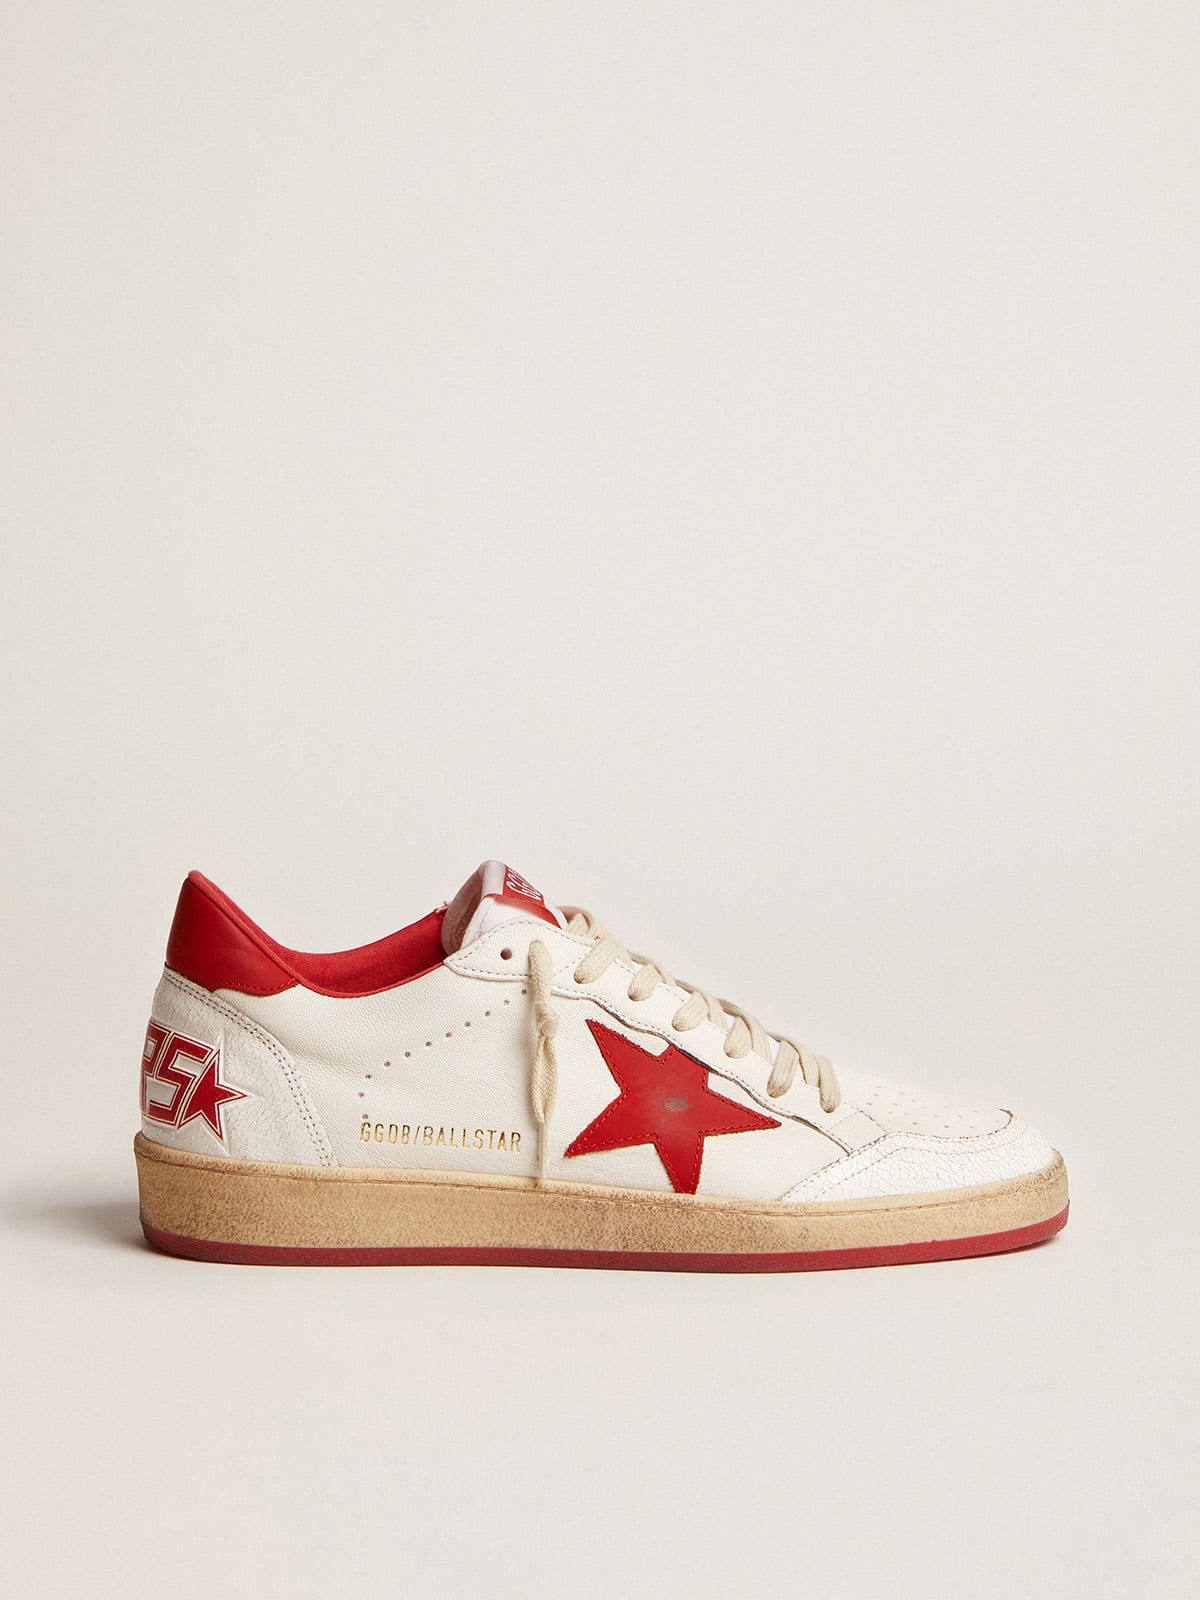 Zapatillas deportivas Ball Star blancas de piel con estrella y refuerzo del talón rojos